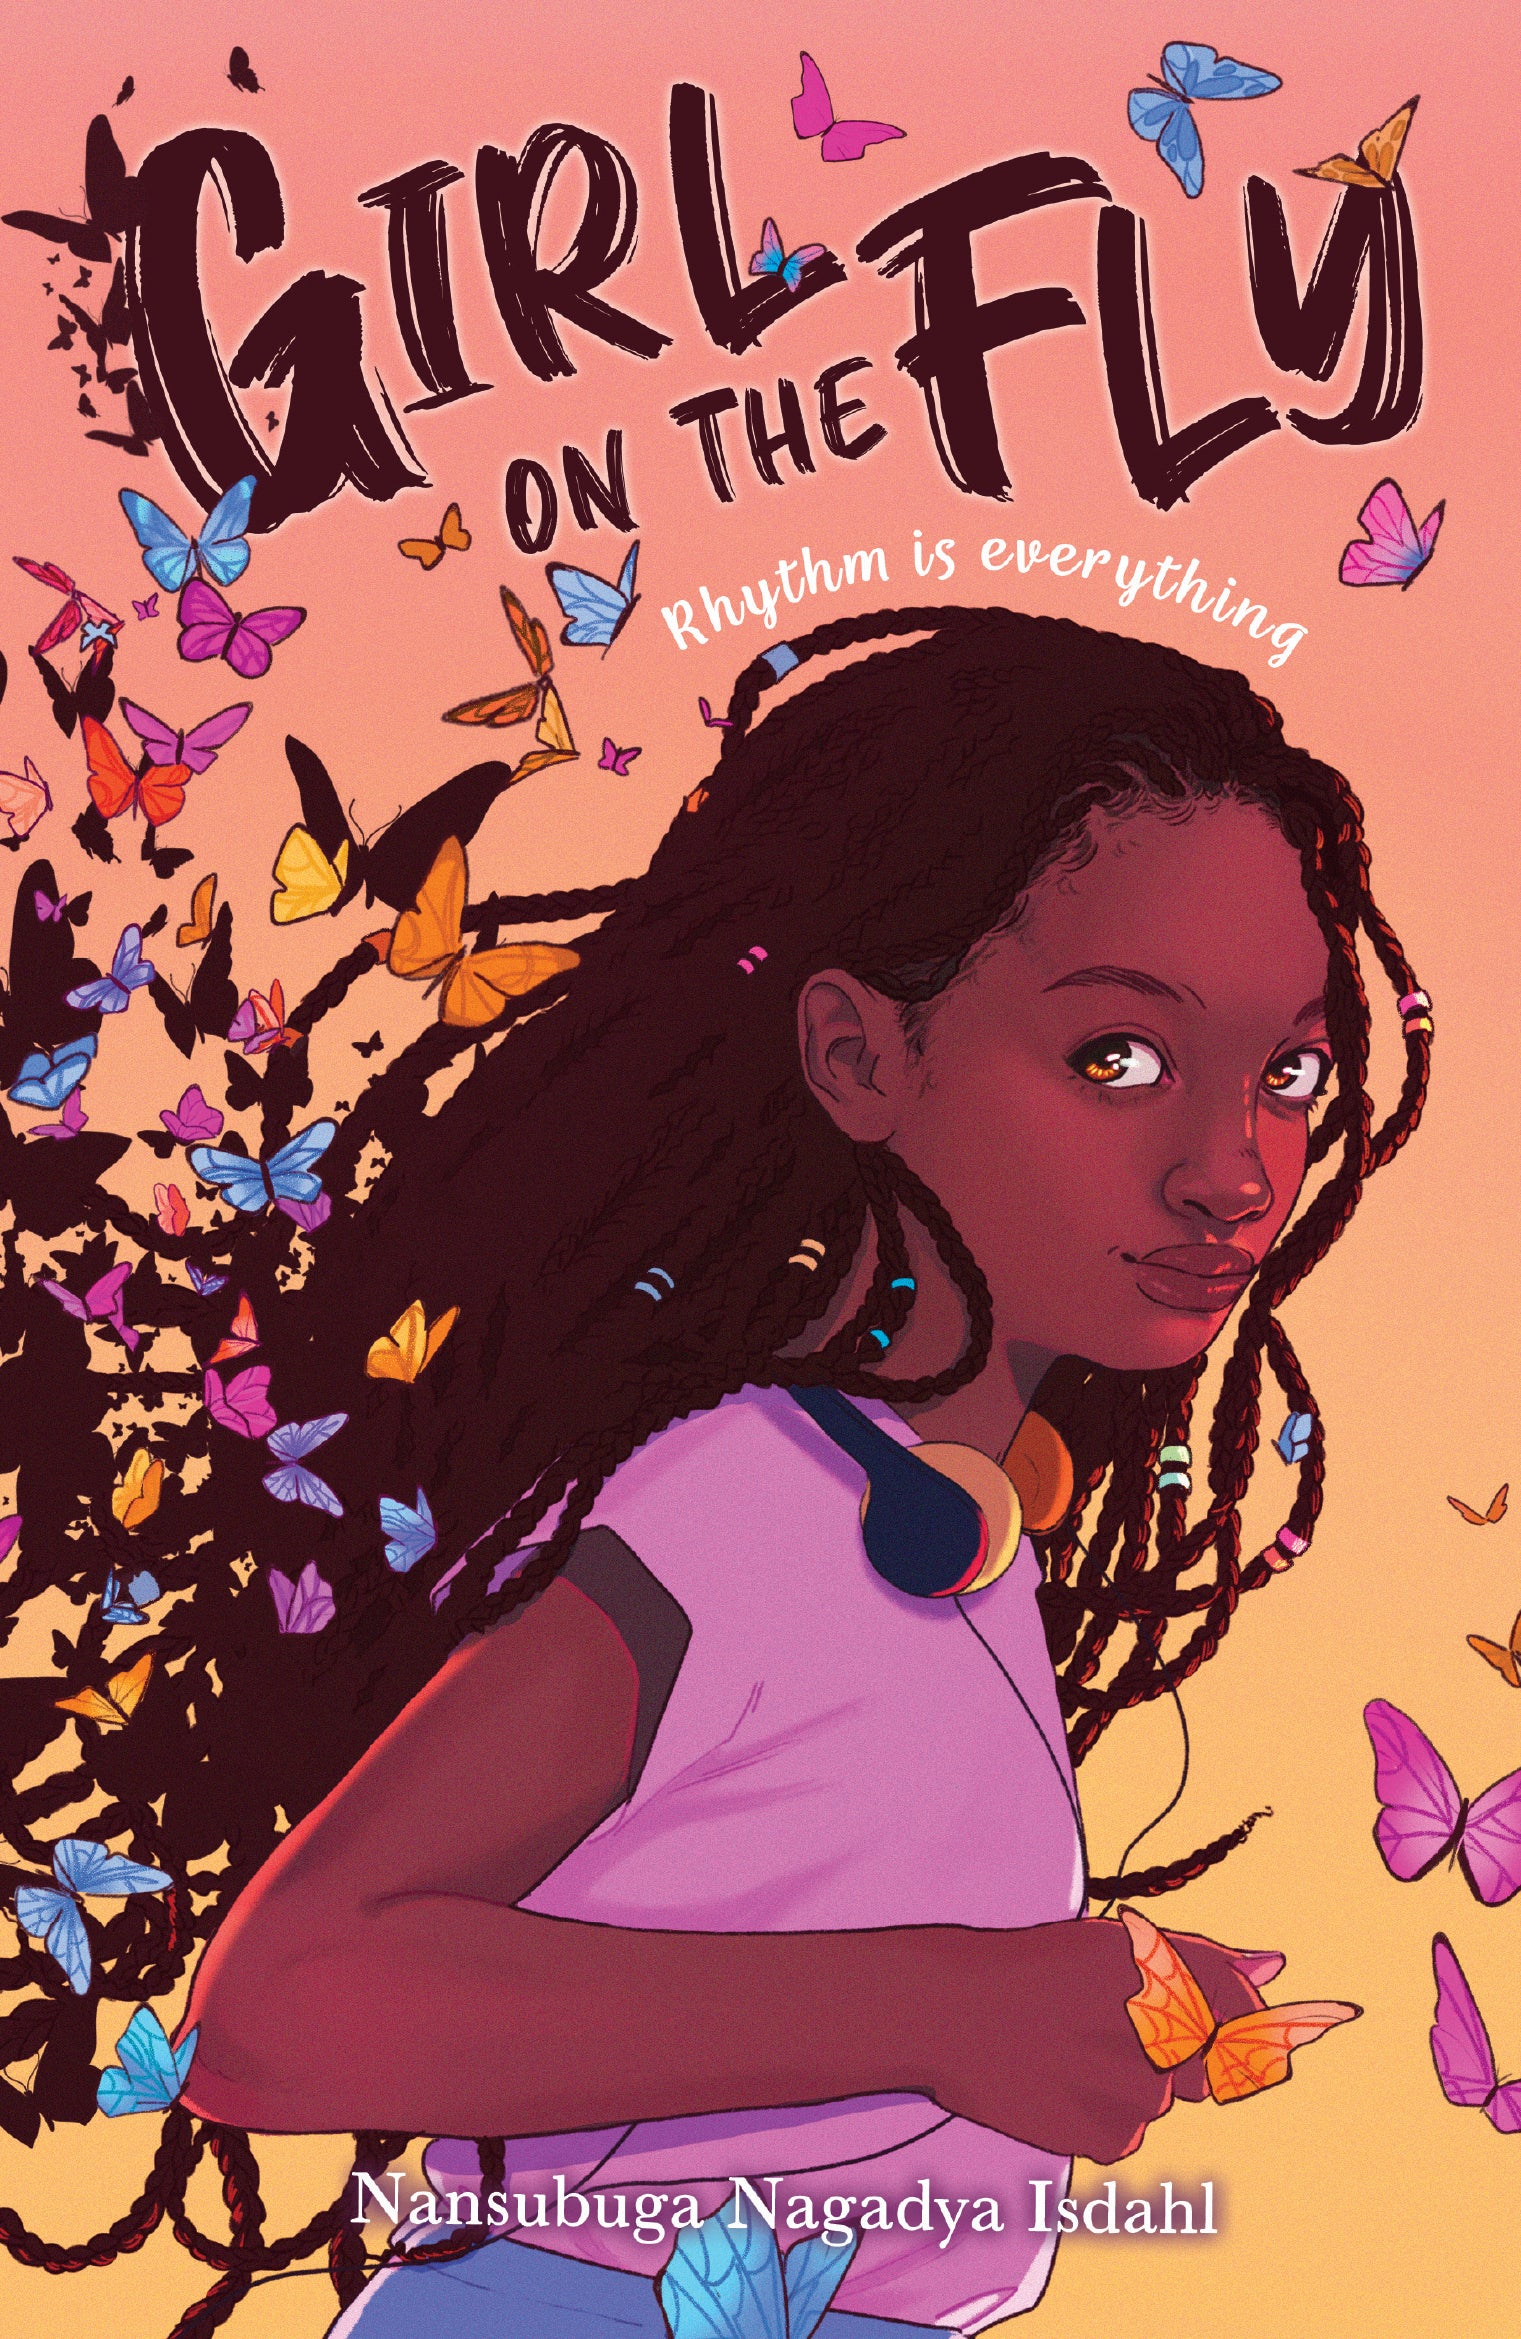 Girl on the fly:  Author: Nansubuga Nagadya Isdahl